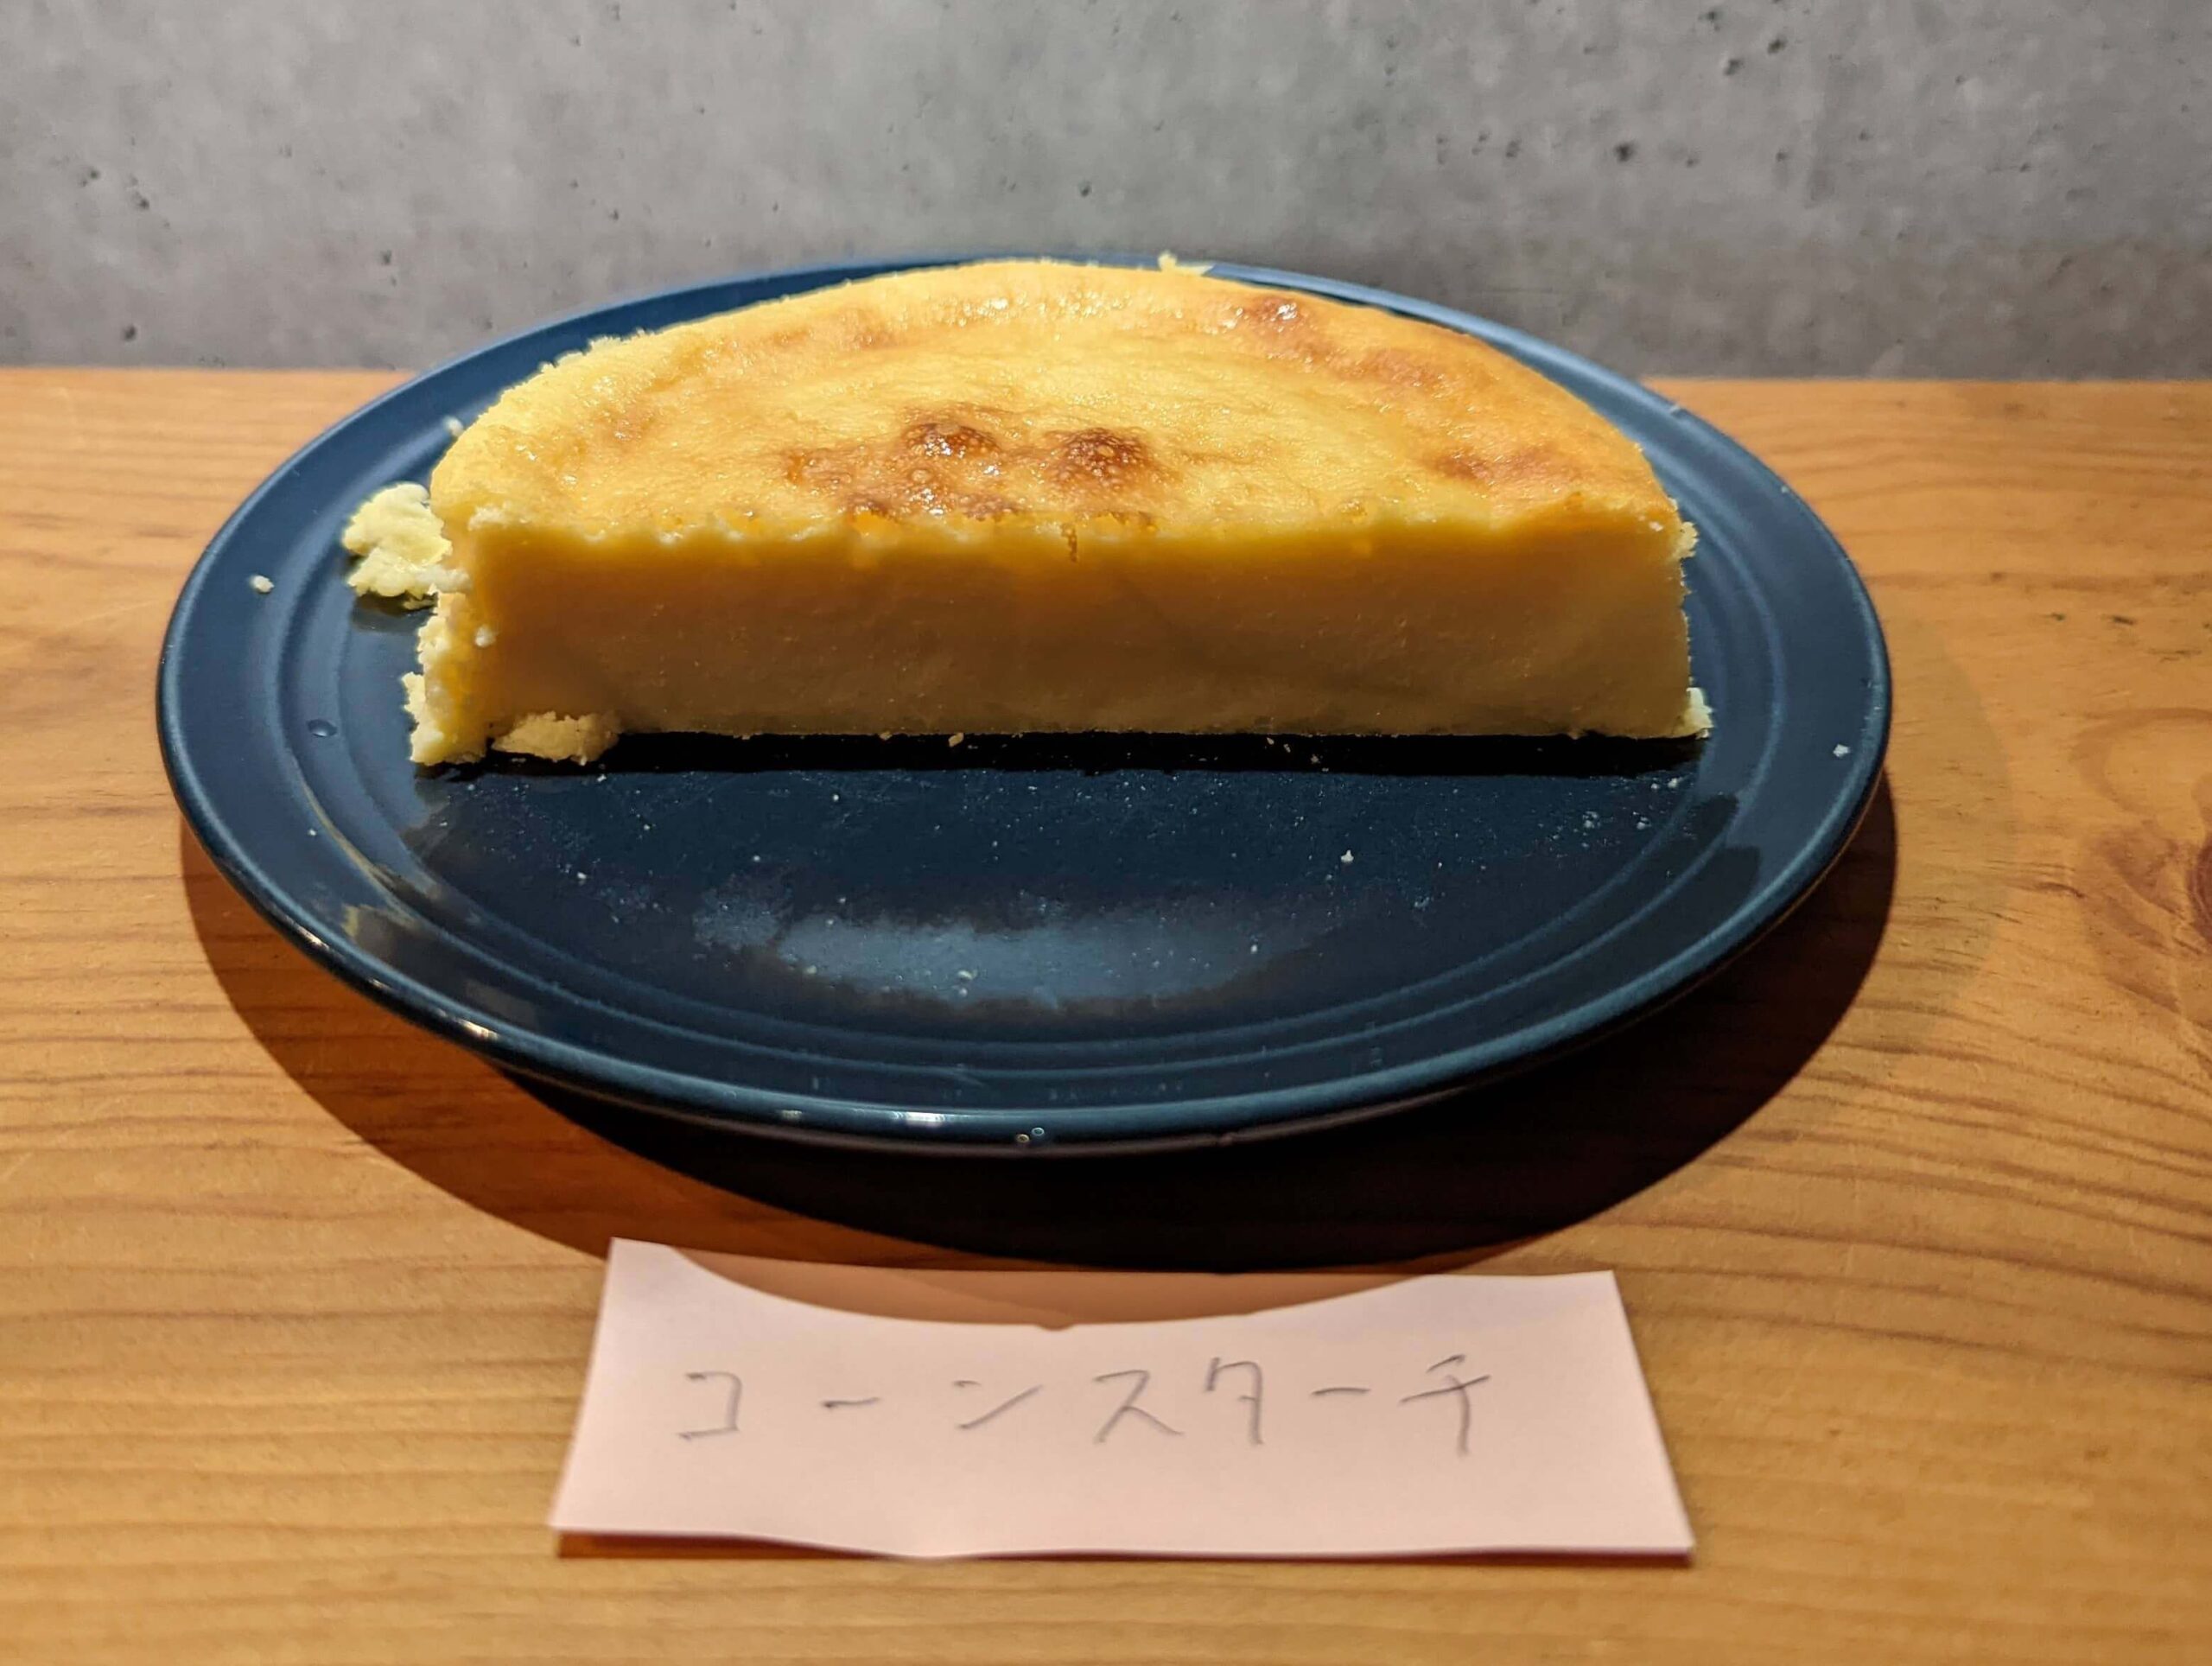 コーンスターチで作ったチーズケーキ (12)